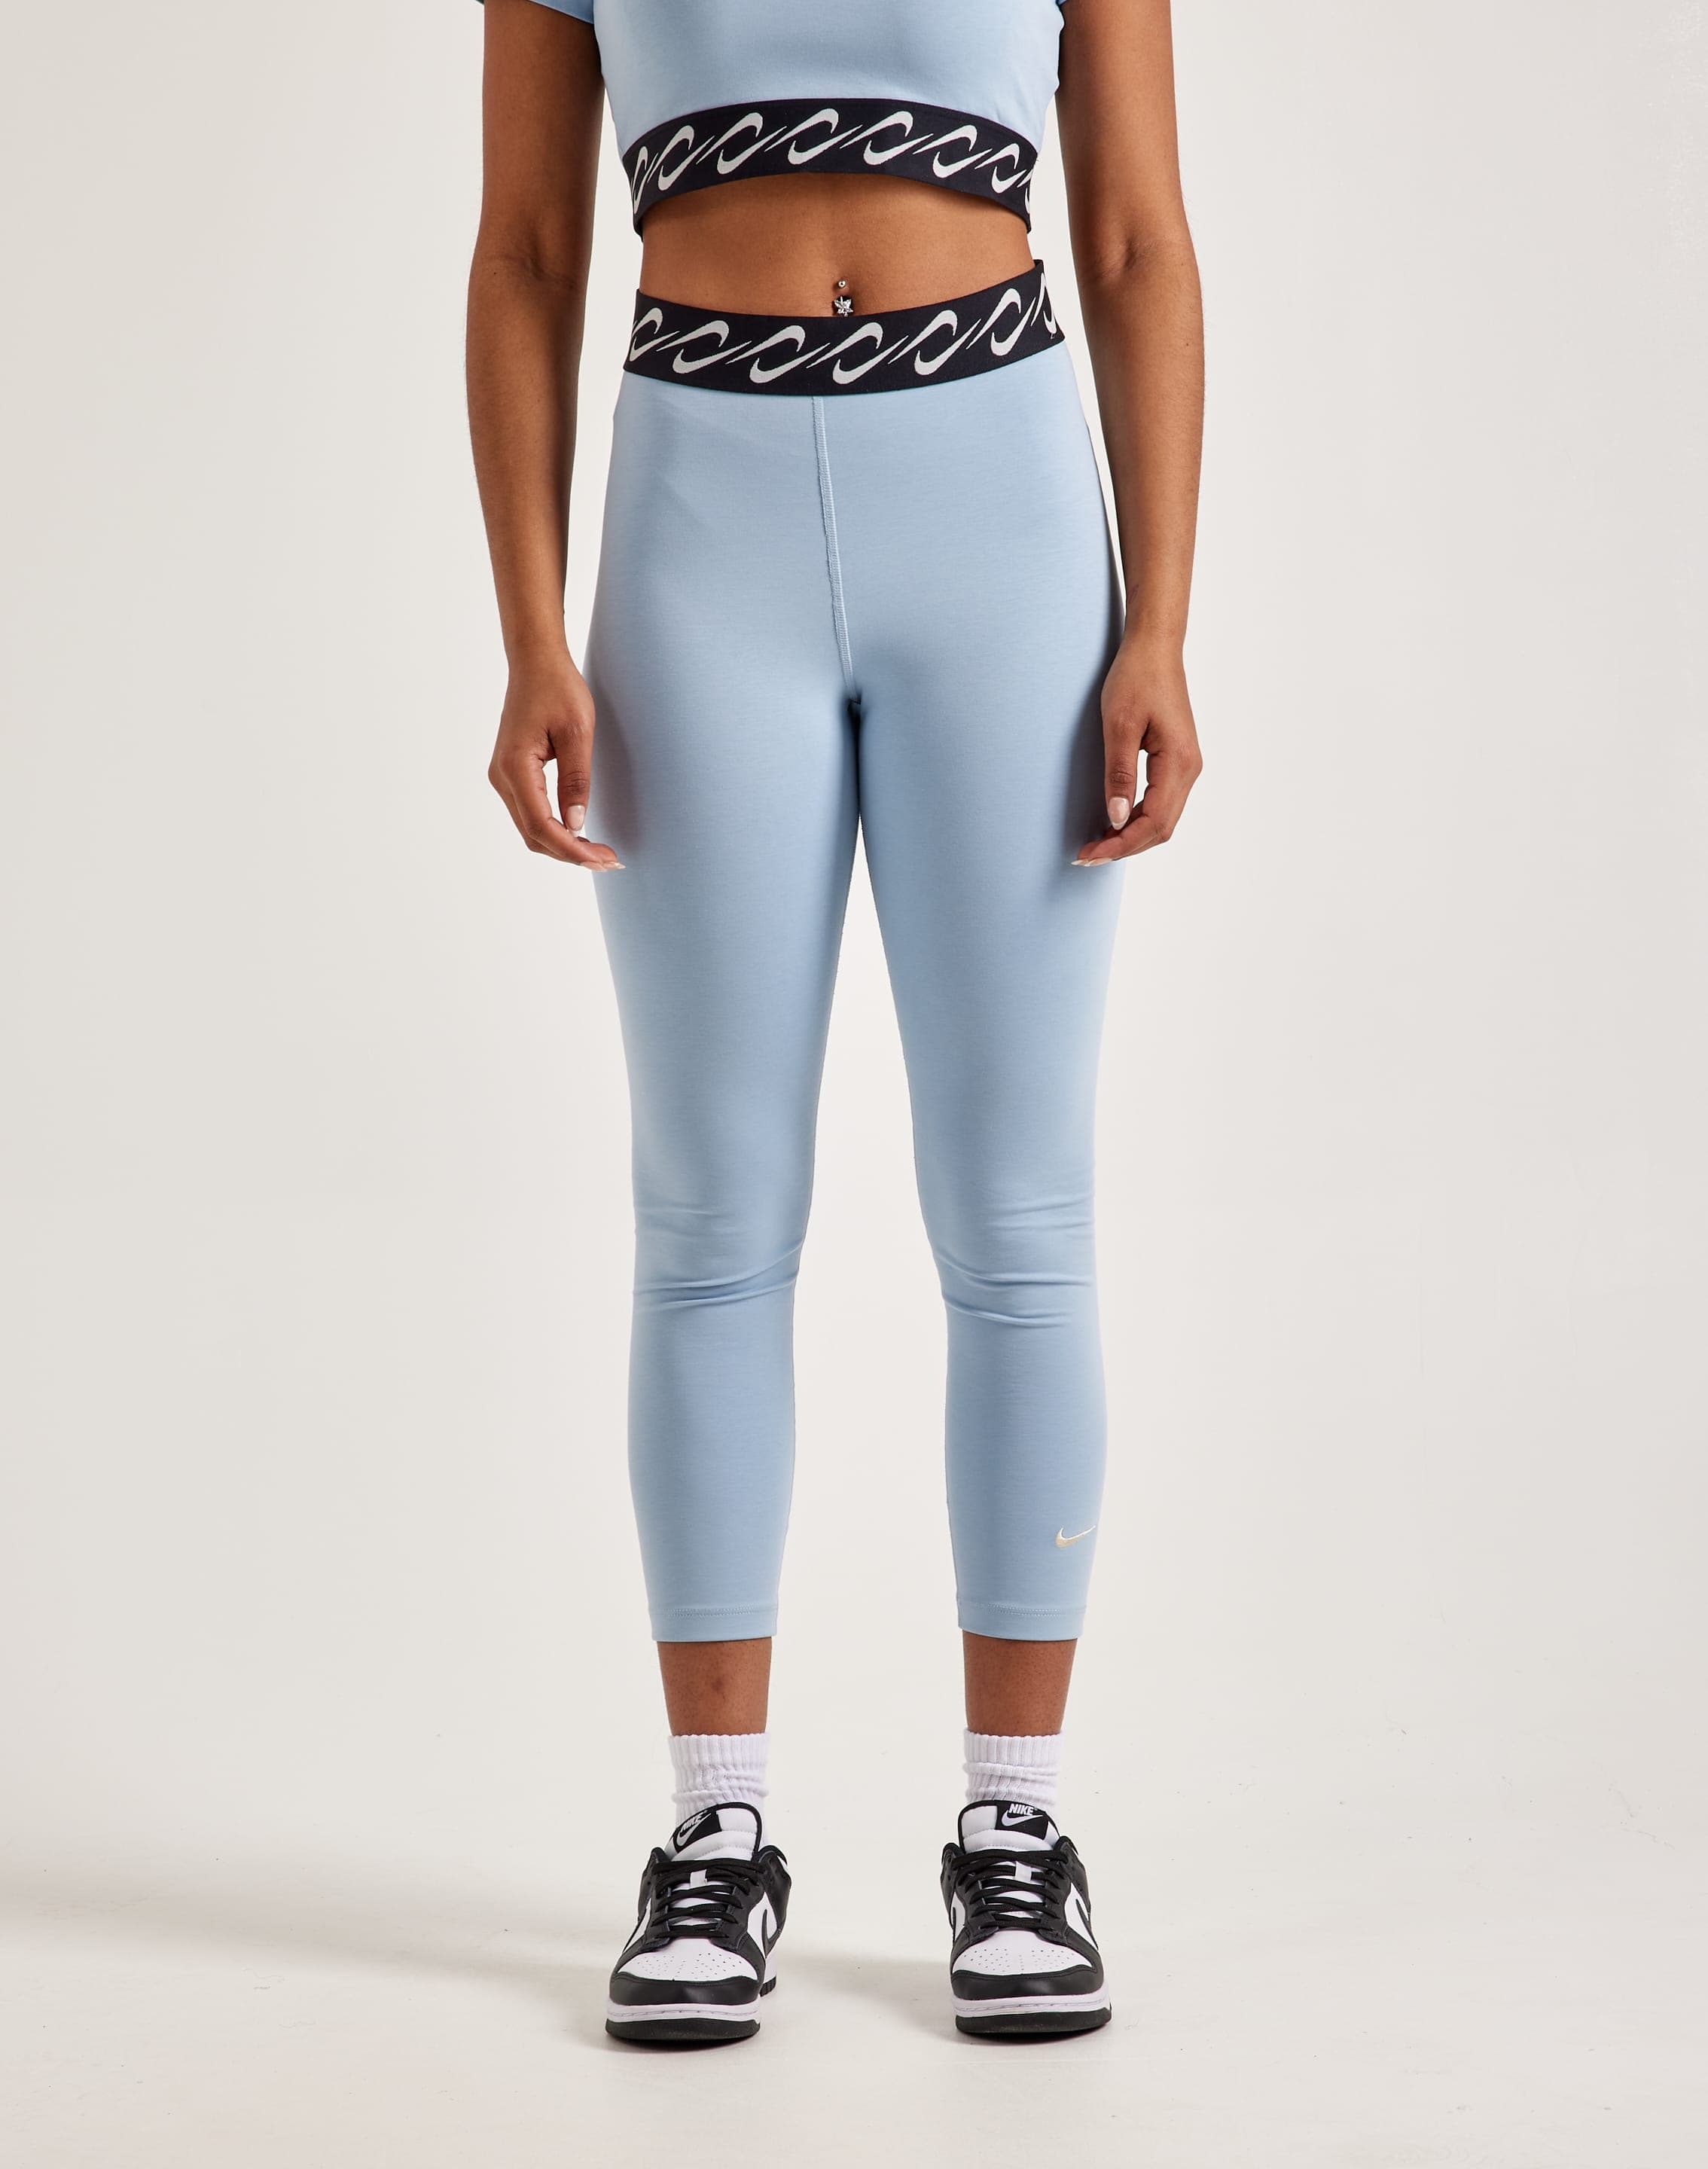 Nike Yoga Leggings for Women for sale